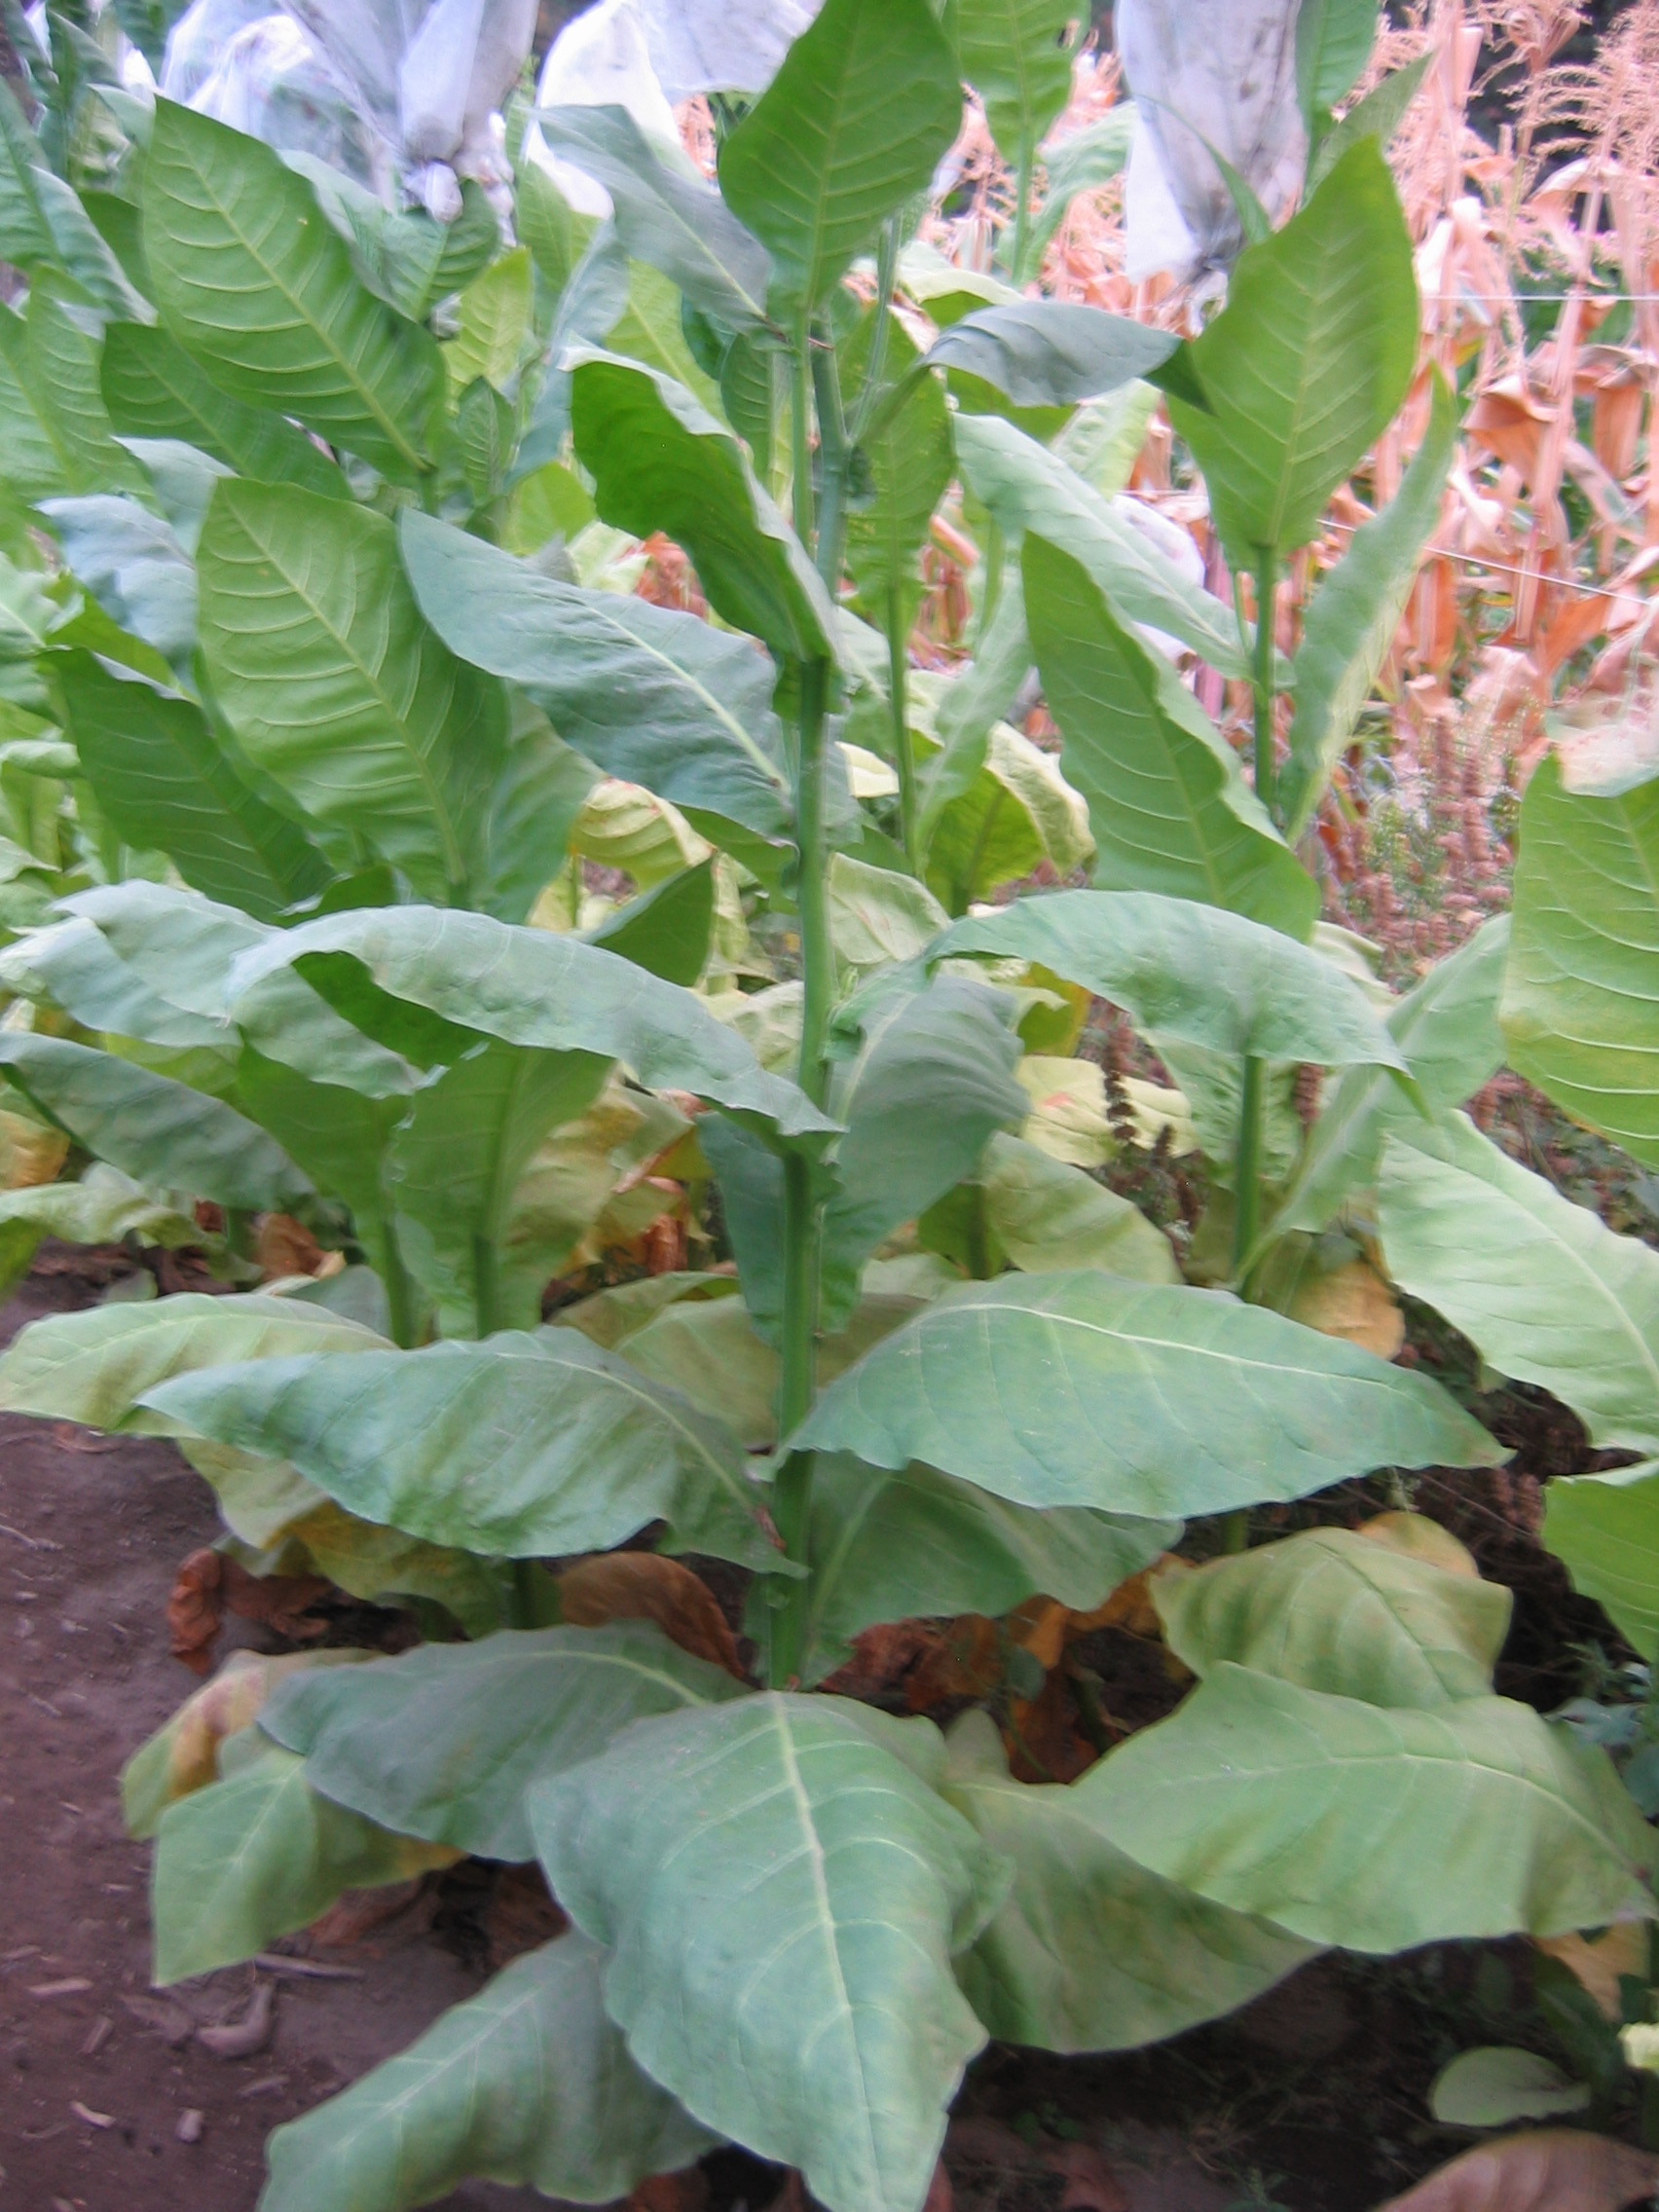  Photo showing Cuban Piloto Cubano growing